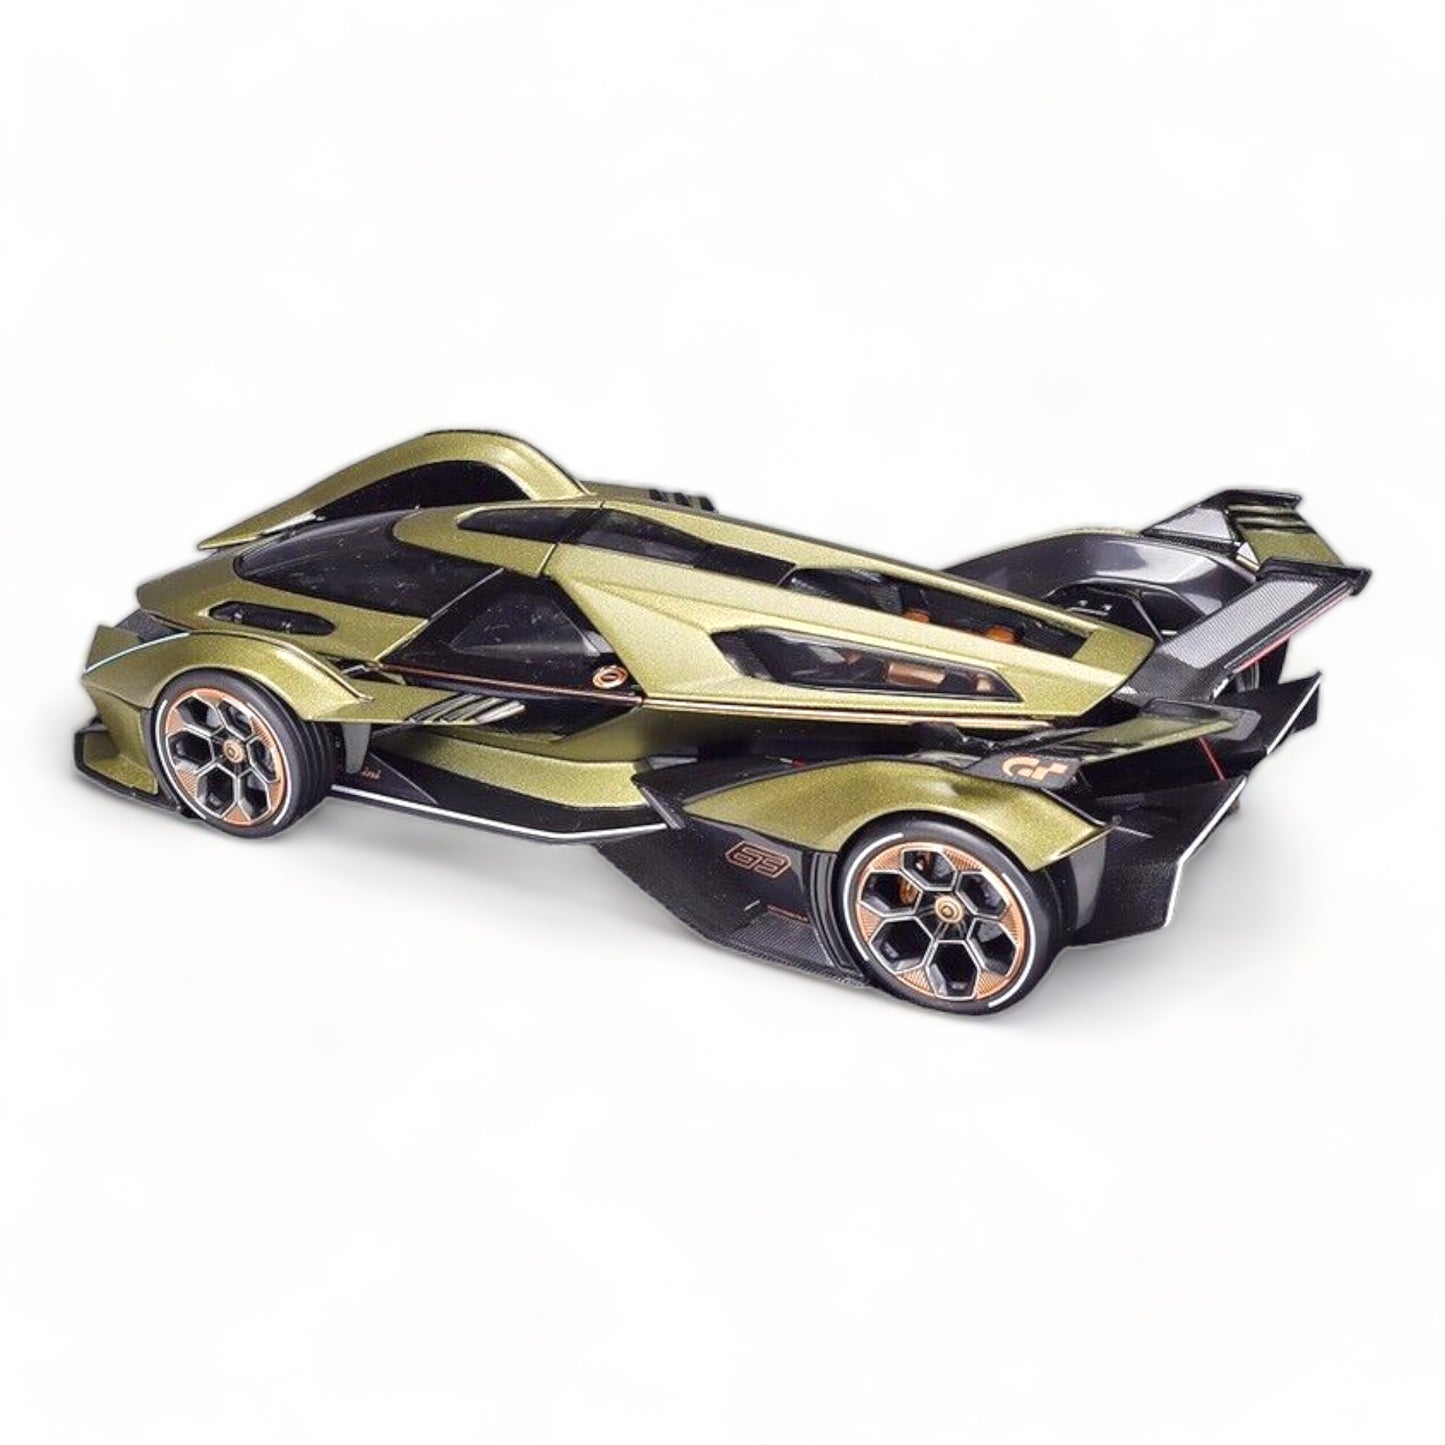 1/18 Diecast Lamborghini V12 Vision Gran Turismo Matt Green Metallic Scale Model car by Maisto